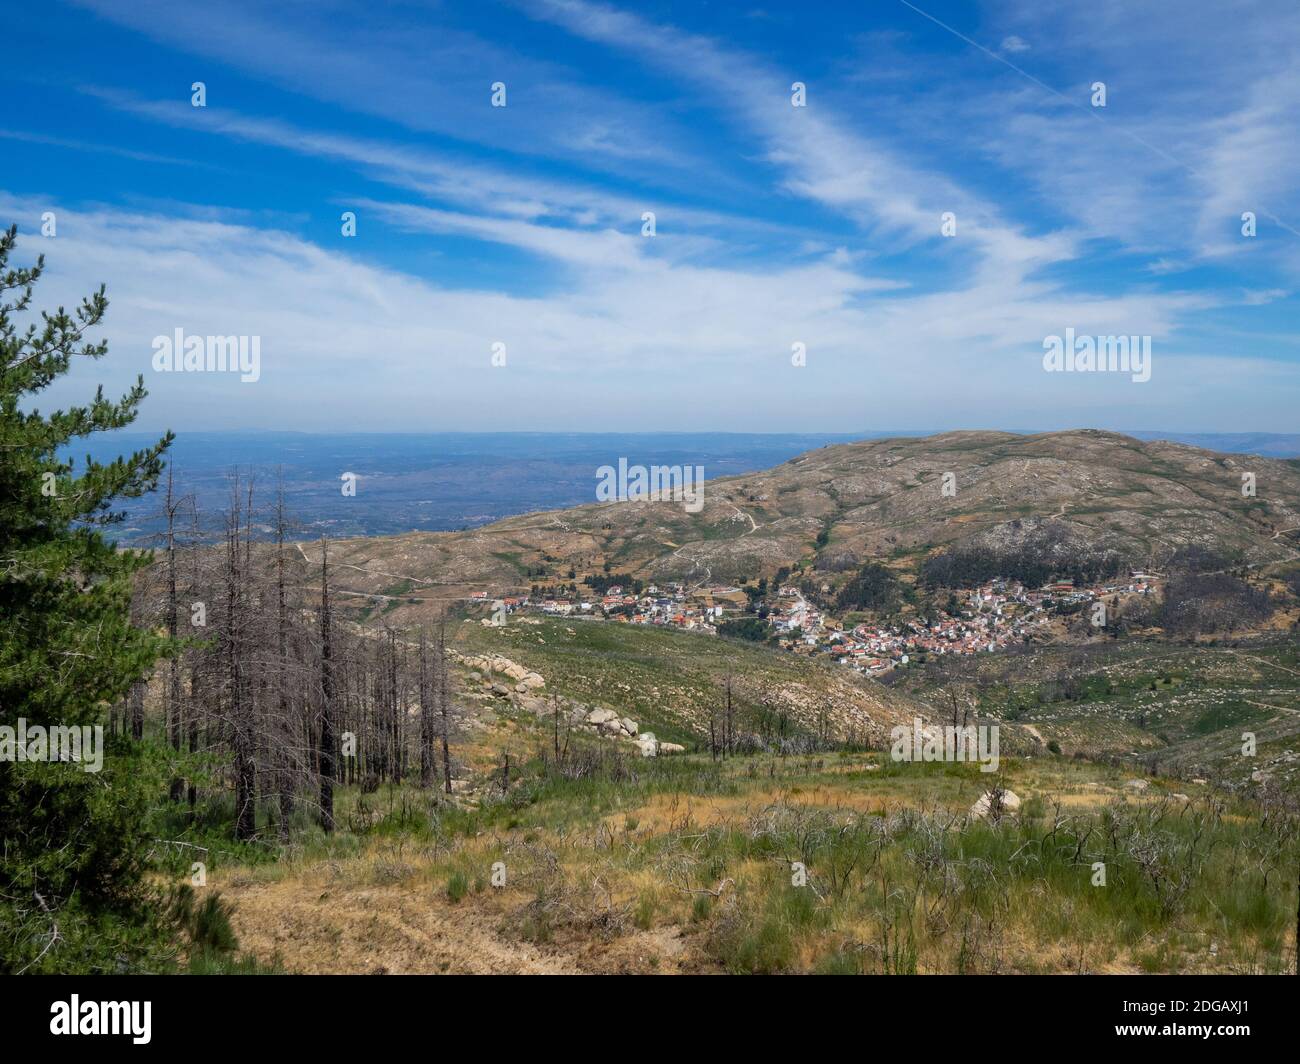 Sabugueiro hamlet in the slopes of Serra da Estrela, Portugal Stock Photo